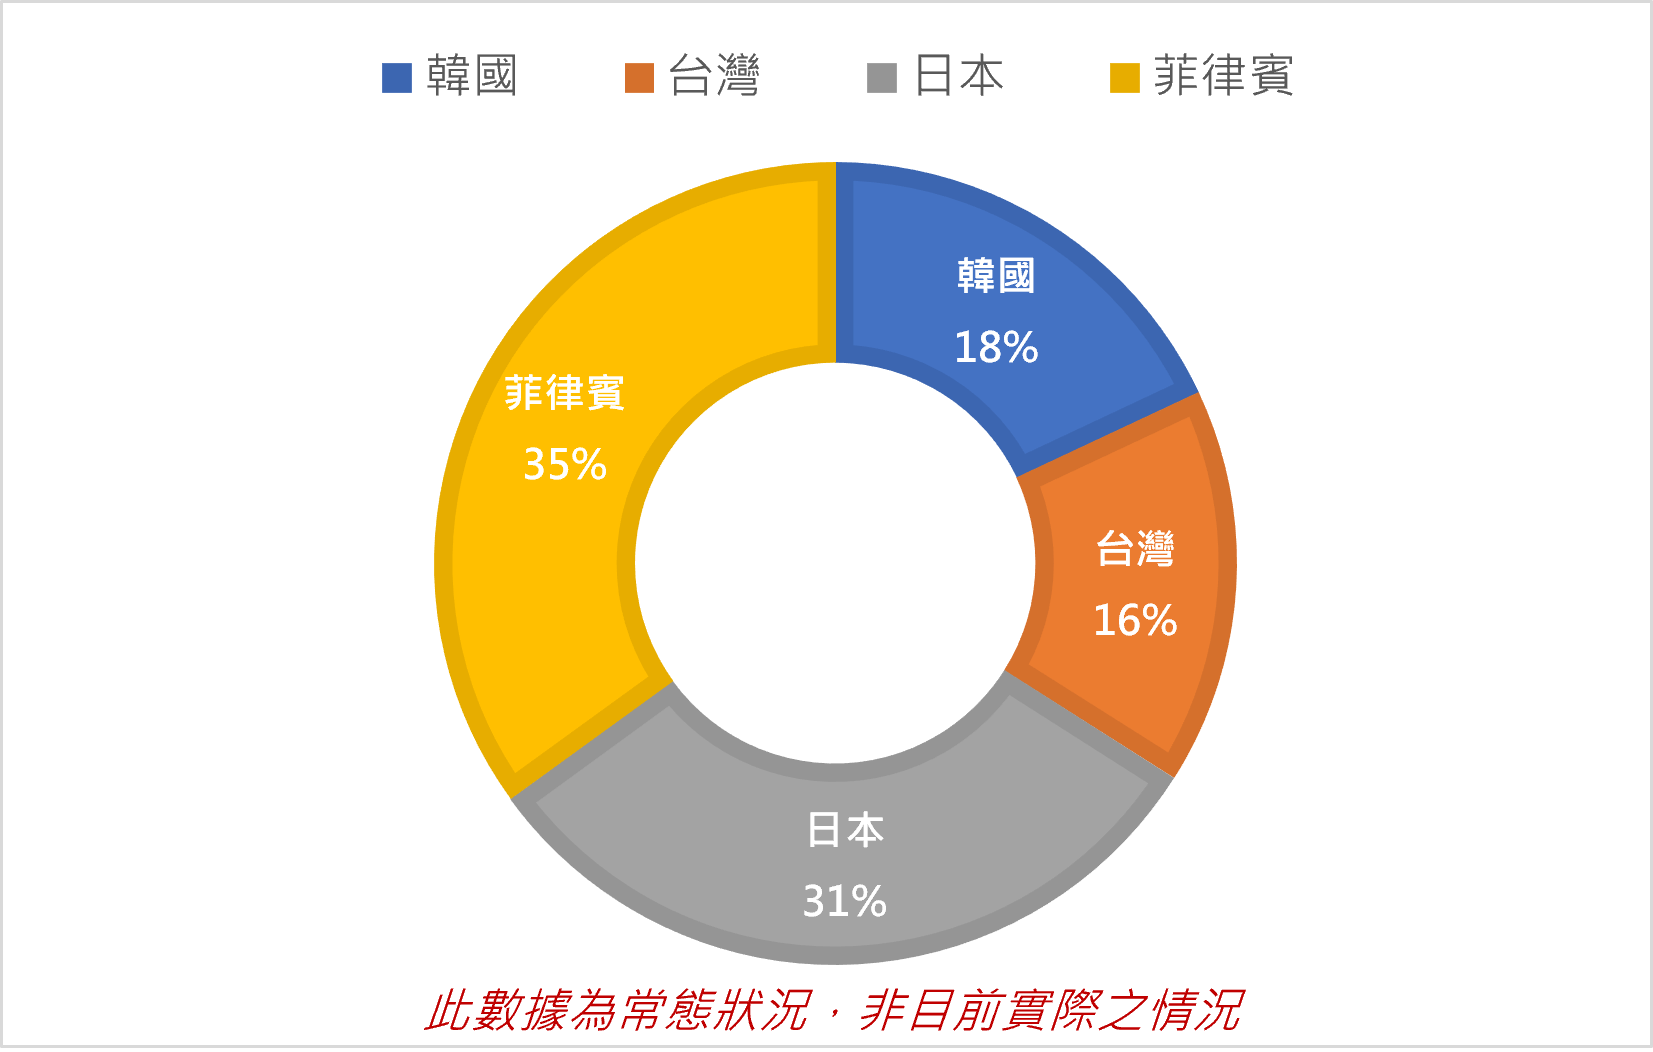 菲律賓國際大學LCIC目前學生國籍比例為：韓國18%，台灣16%，日本31%，菲律賓當地學生占35%